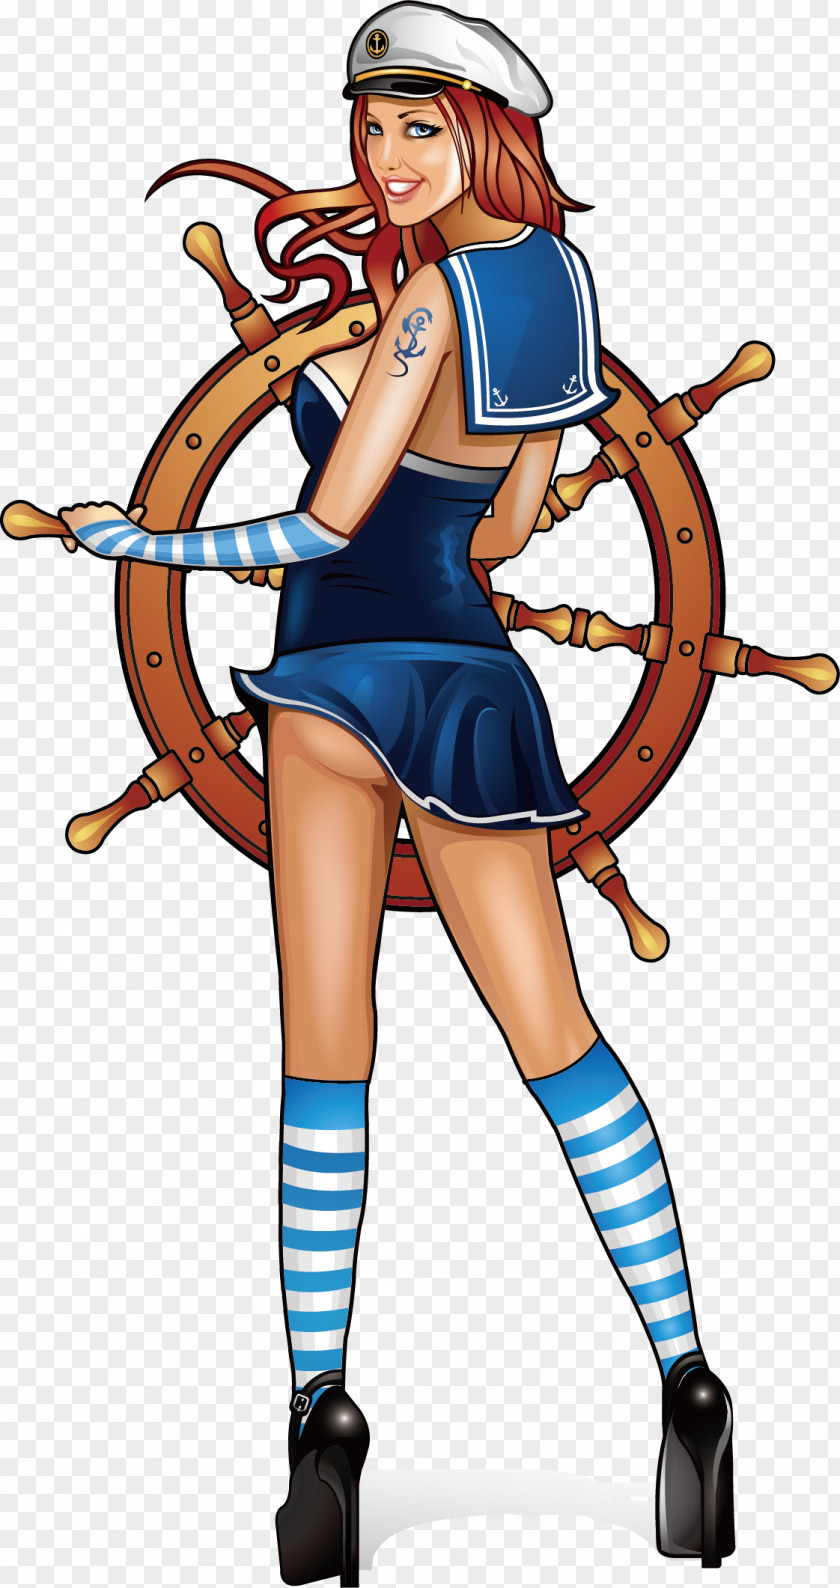 Sailing Man Sea Captain Cartoon Sailor Illustration PNG